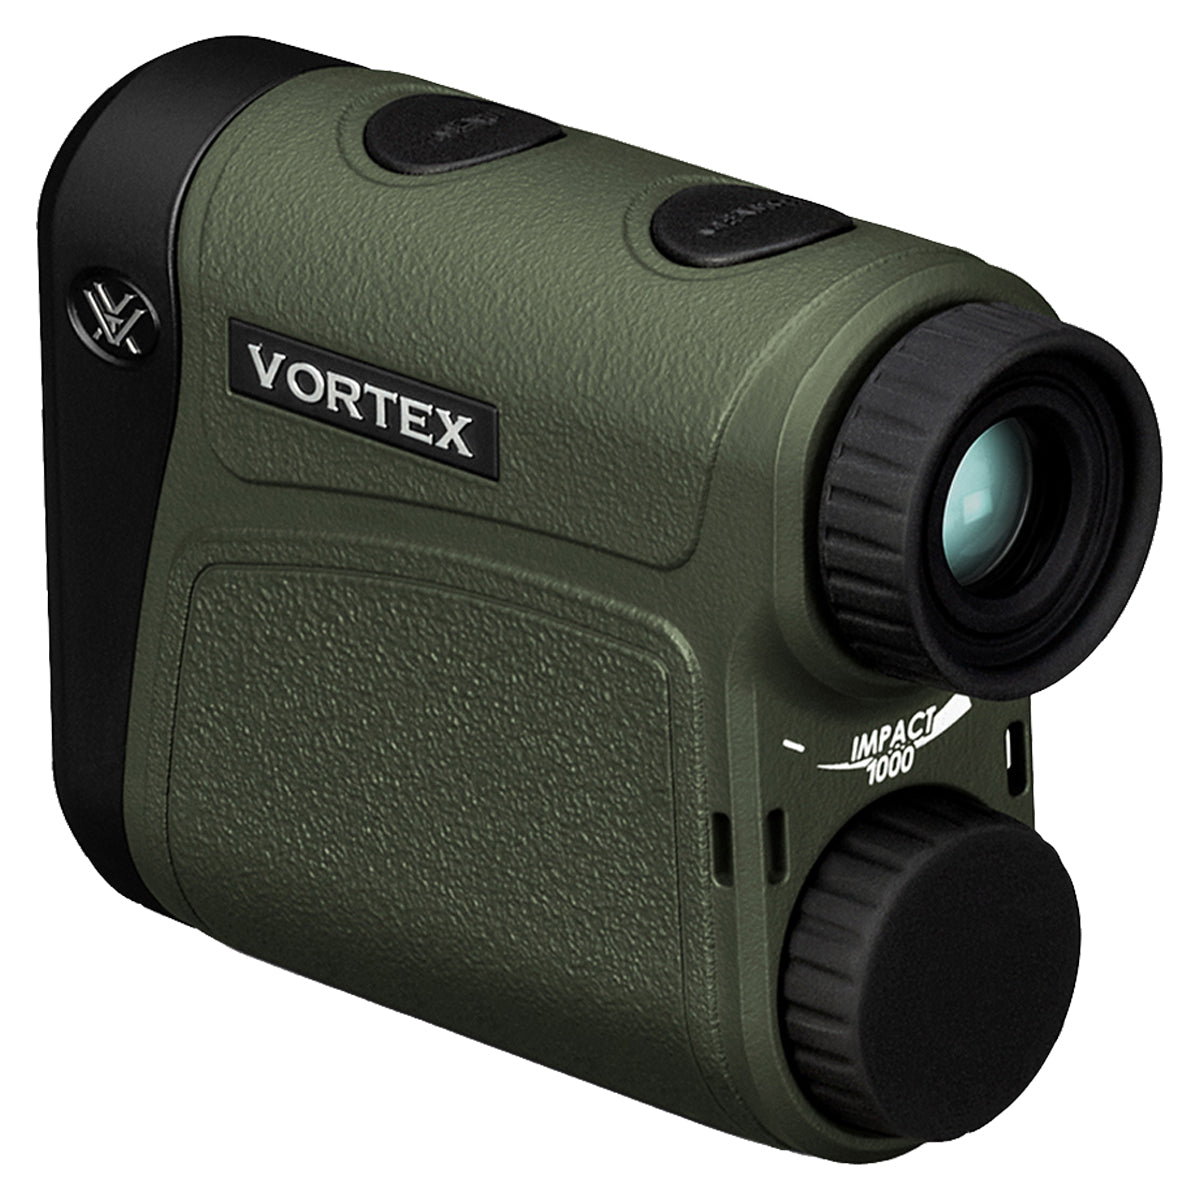 Vortex Impact 1000 Rangefinder in  by GOHUNT | Vortex Optics - GOHUNT Shop